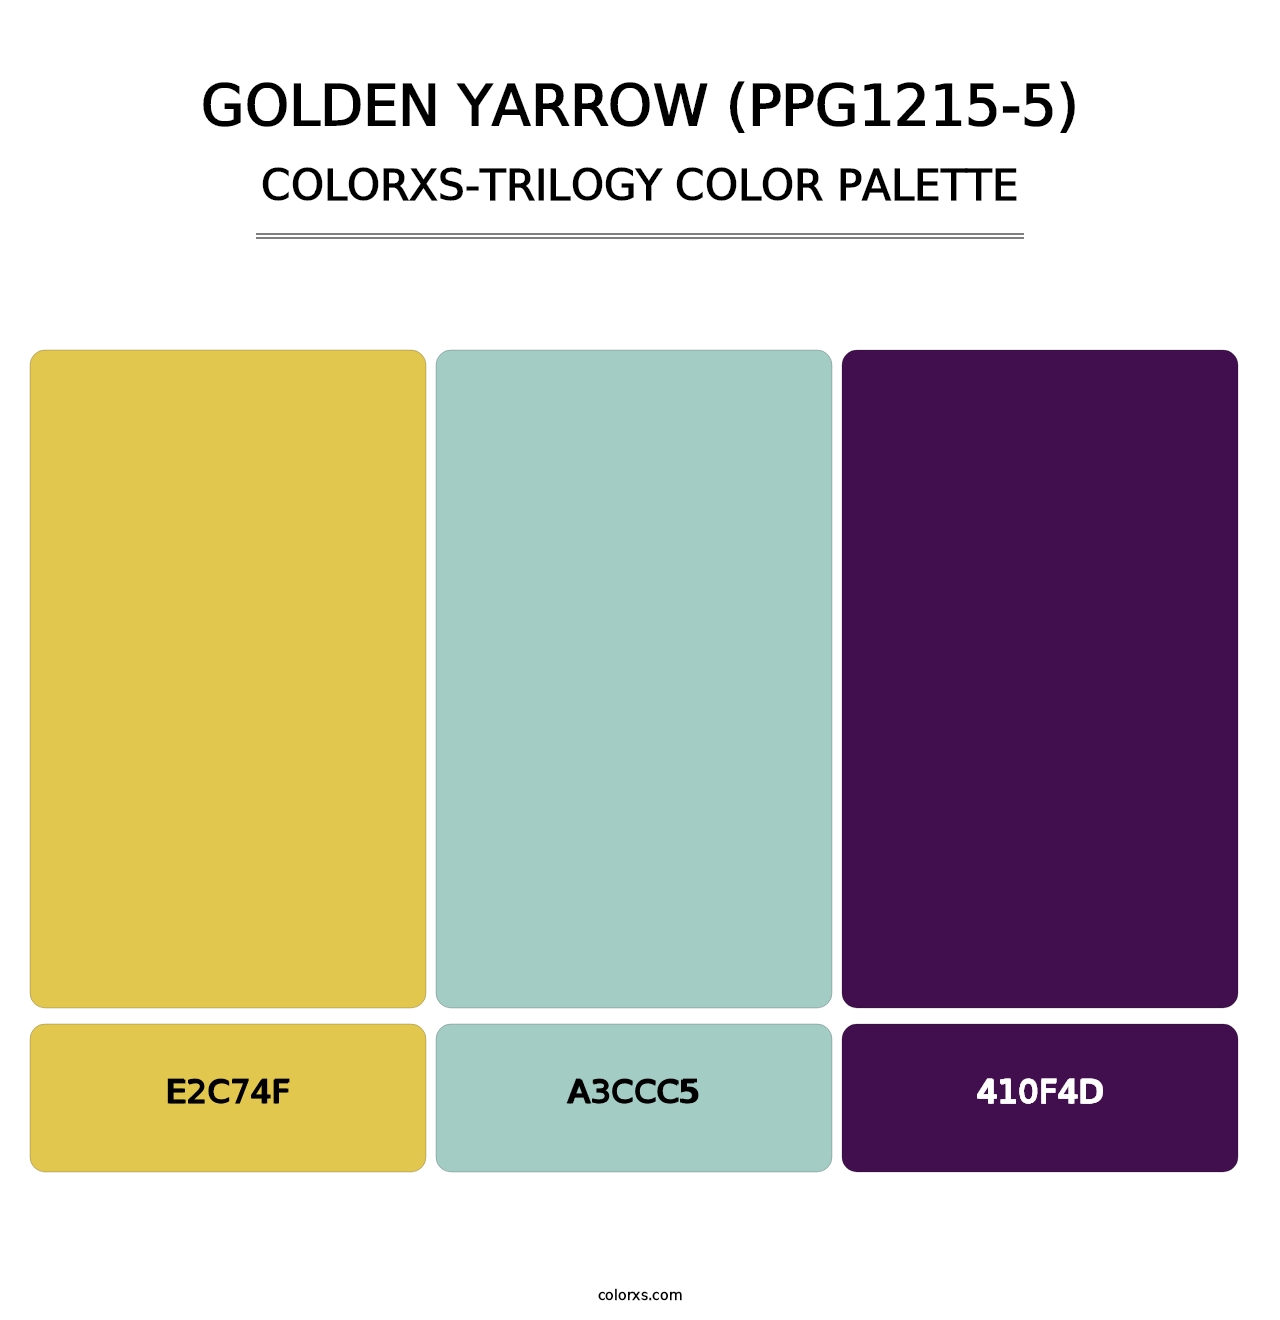 Golden Yarrow (PPG1215-5) - Colorxs Trilogy Palette